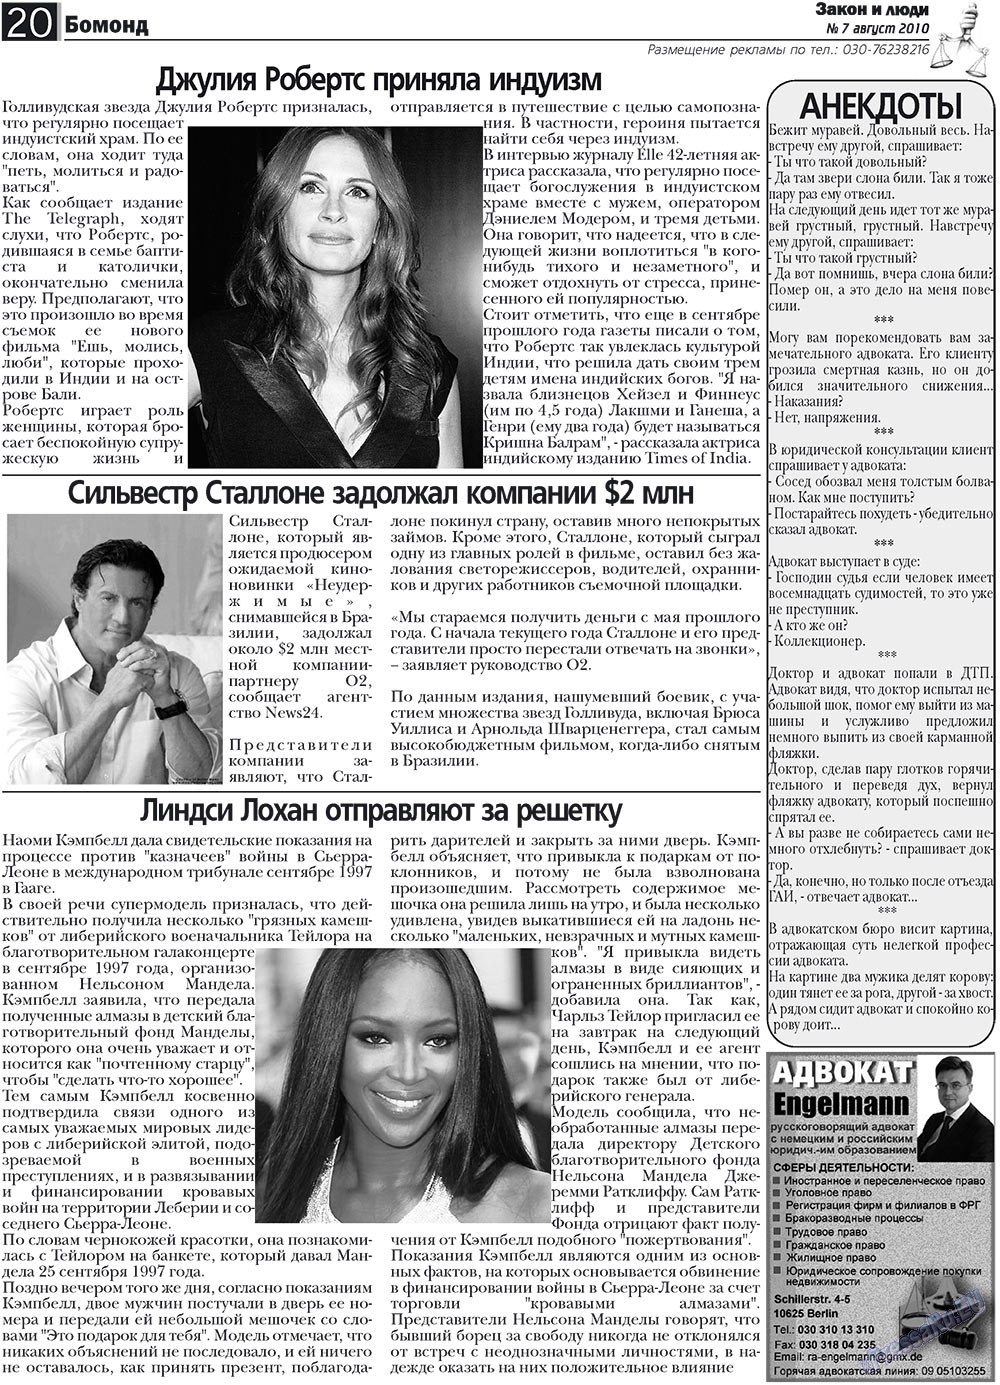 Закон и люди, газета. 2010 №7 стр.20